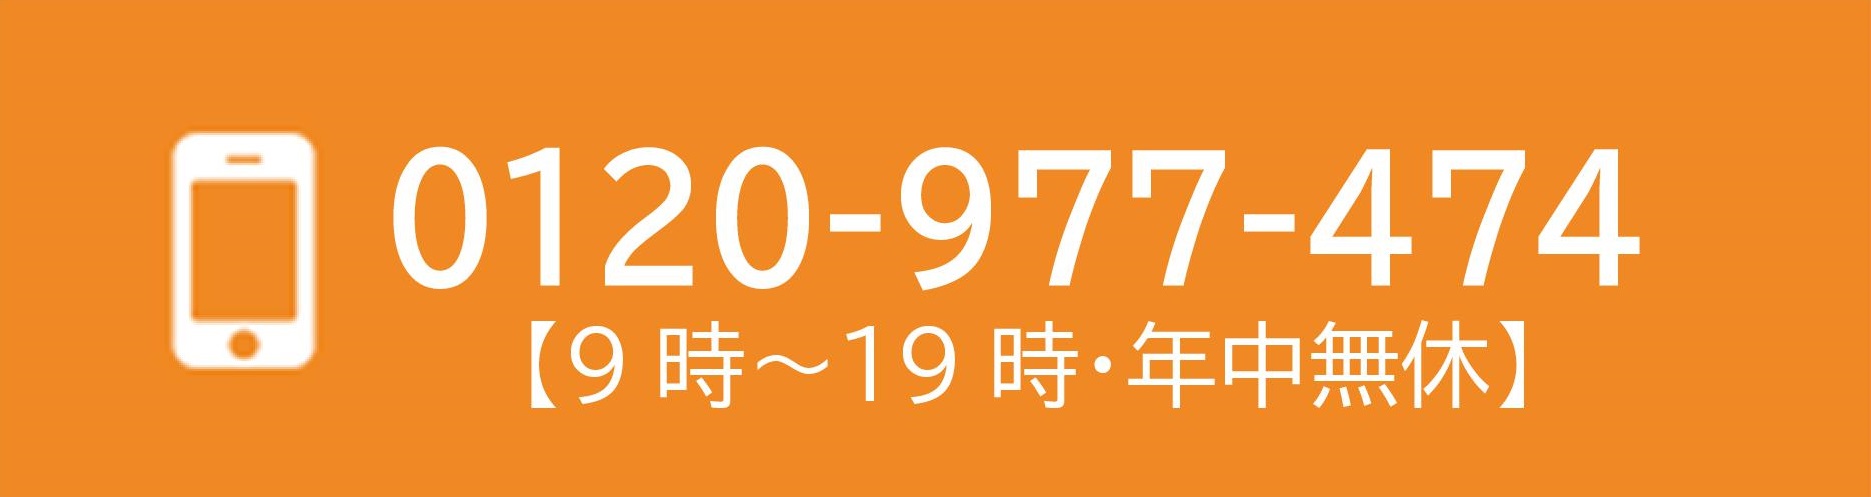 0120-977-474 電話問合せ受付時間
9時～21時【年中無休】